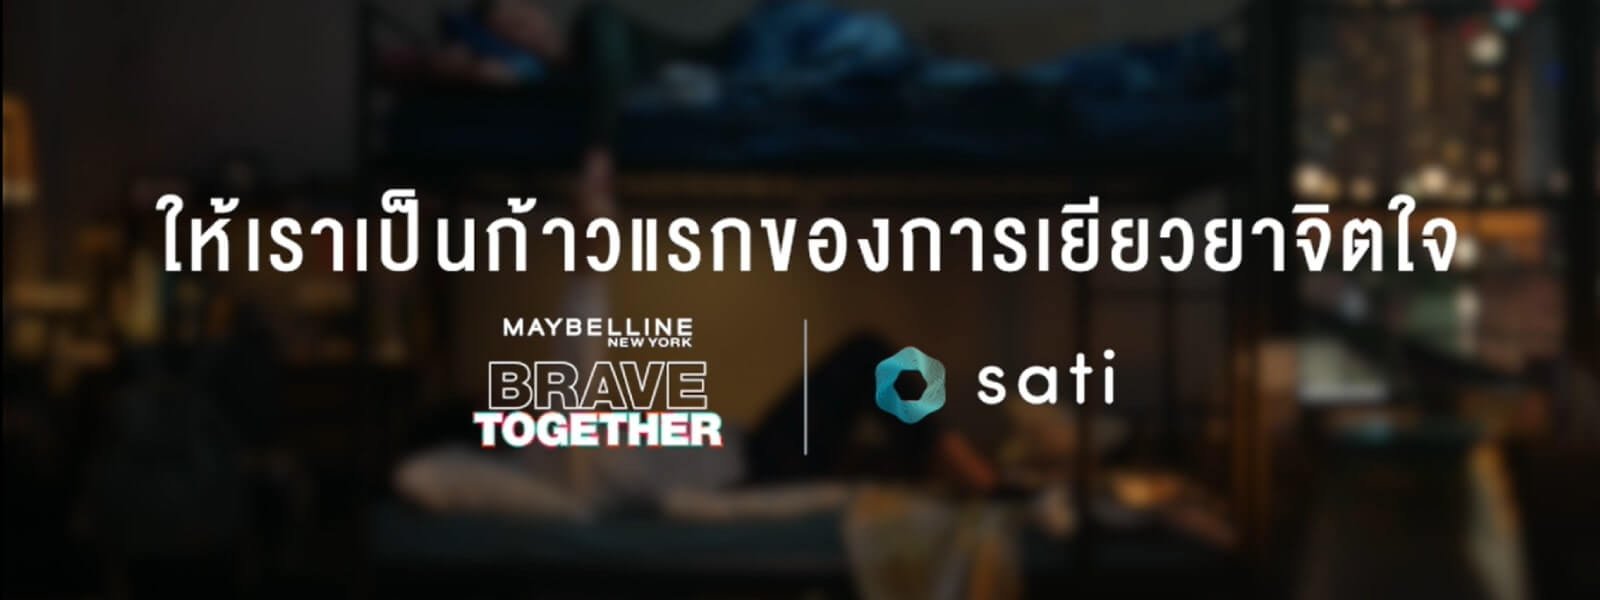 Brave Together x Sati App